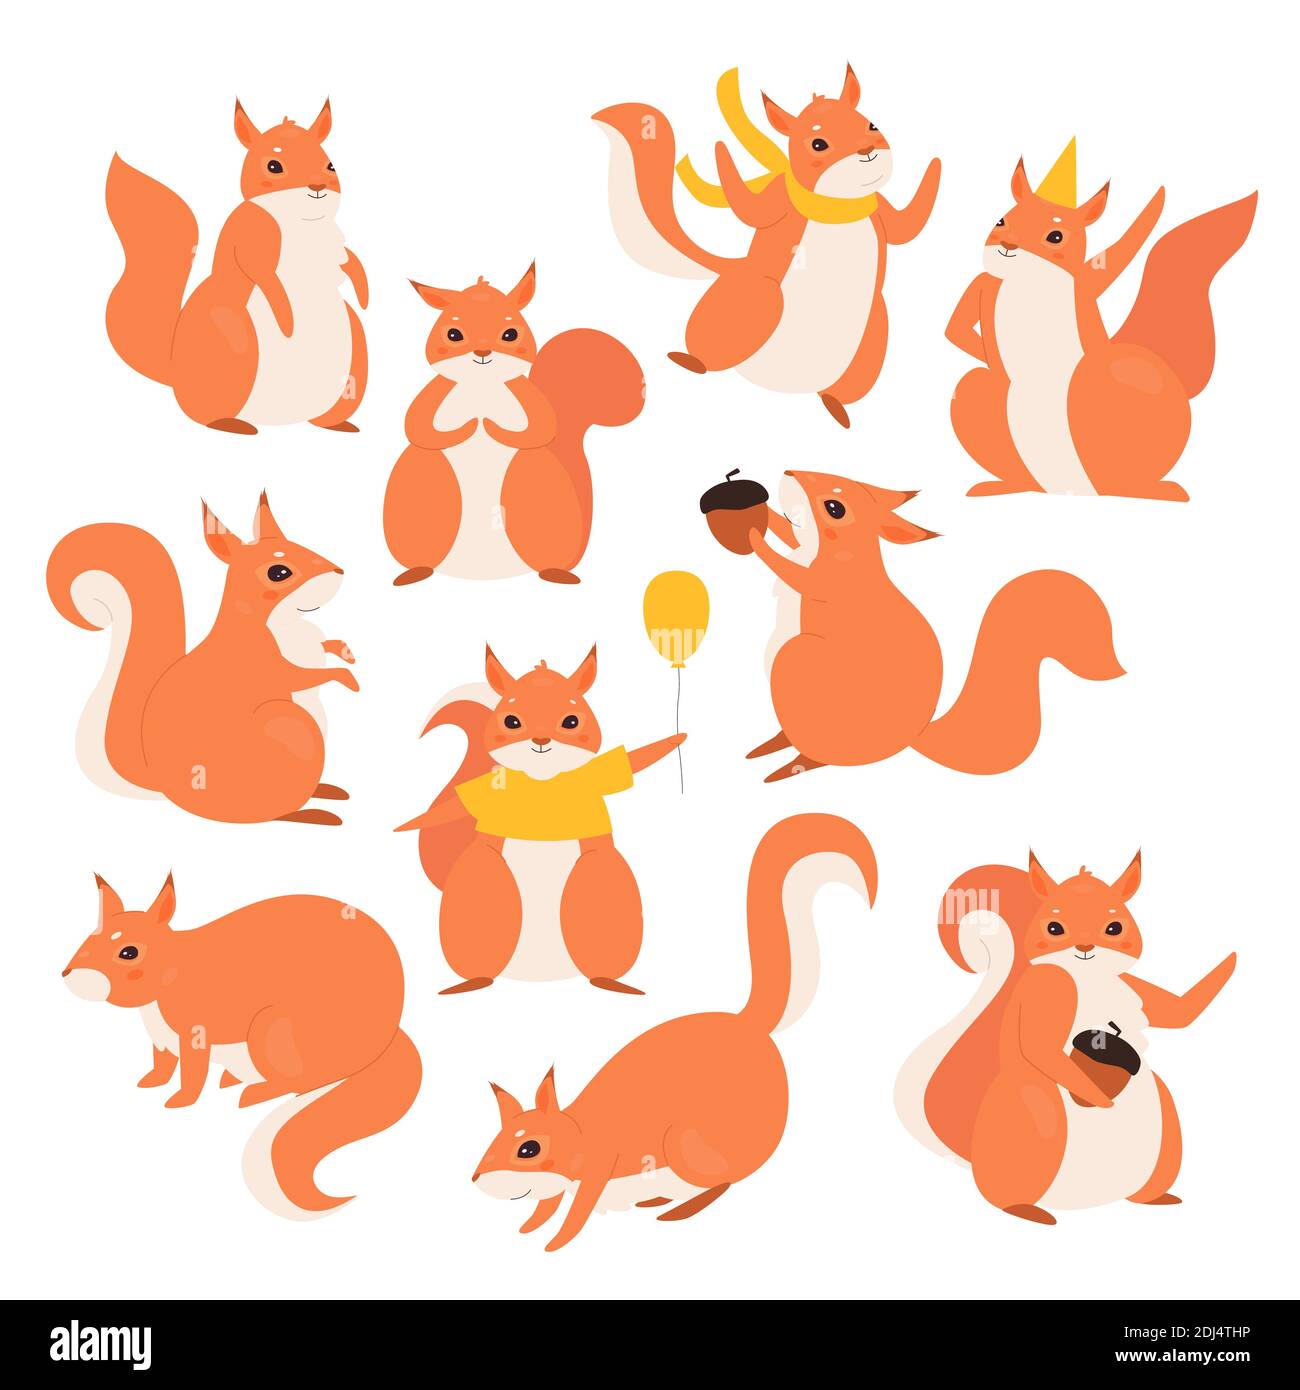 Eichhörnchen Vektor Illustration Set. Cartoon nette lustige pelzigen Eichhörnchen Figuren Sammlung, flauschige wilde Tiere halten Eichel oder Geburtstagsballon, tragen Urlaubsmütze und springen isoliert auf weiß Stock Vektor